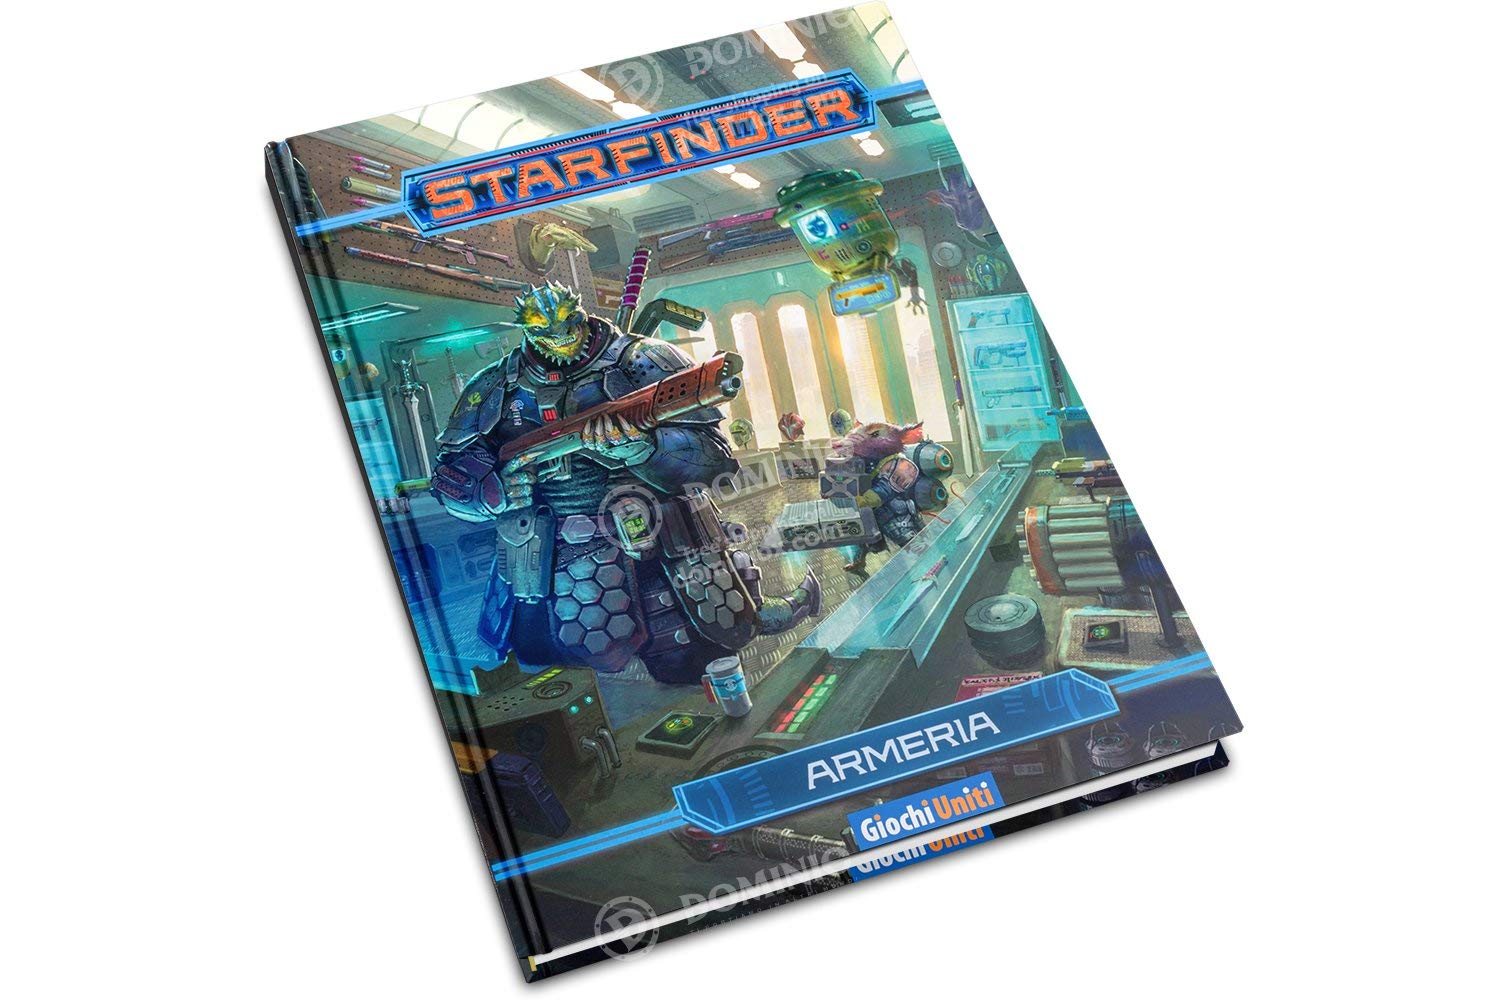 Merchandising Giochi Uniti: Starfinder - Armeria NUOVO SIGILLATO, EDIZIONE DEL 27/11/2019 SUBITO DISPONIBILE